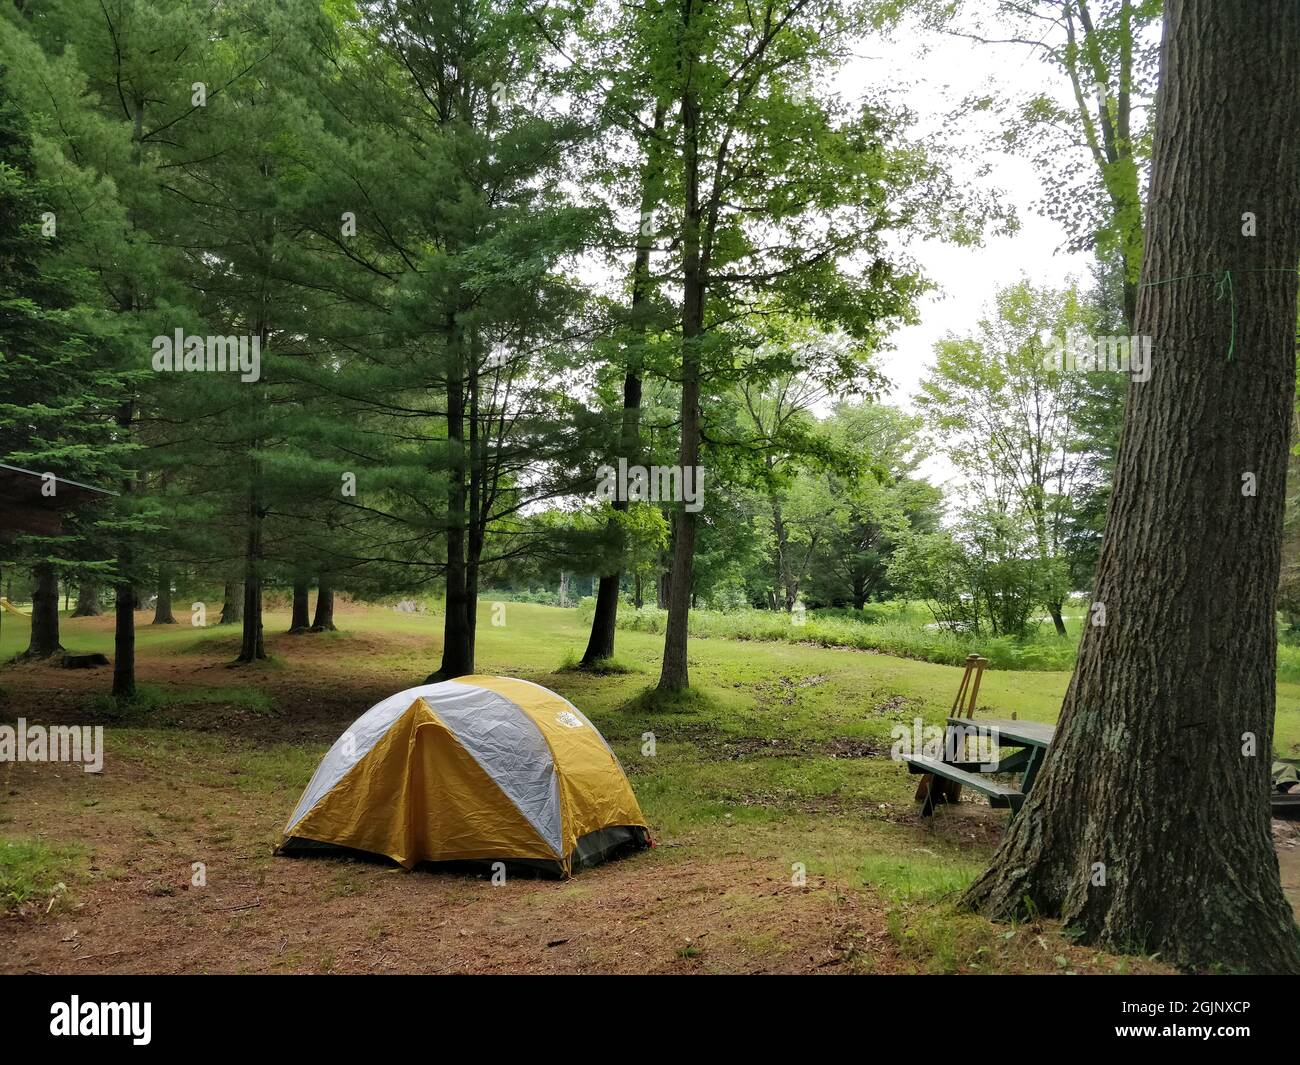 Kofferraum voll von Camping- und outdoor-Picknick-Sachen Stockfotografie -  Alamy